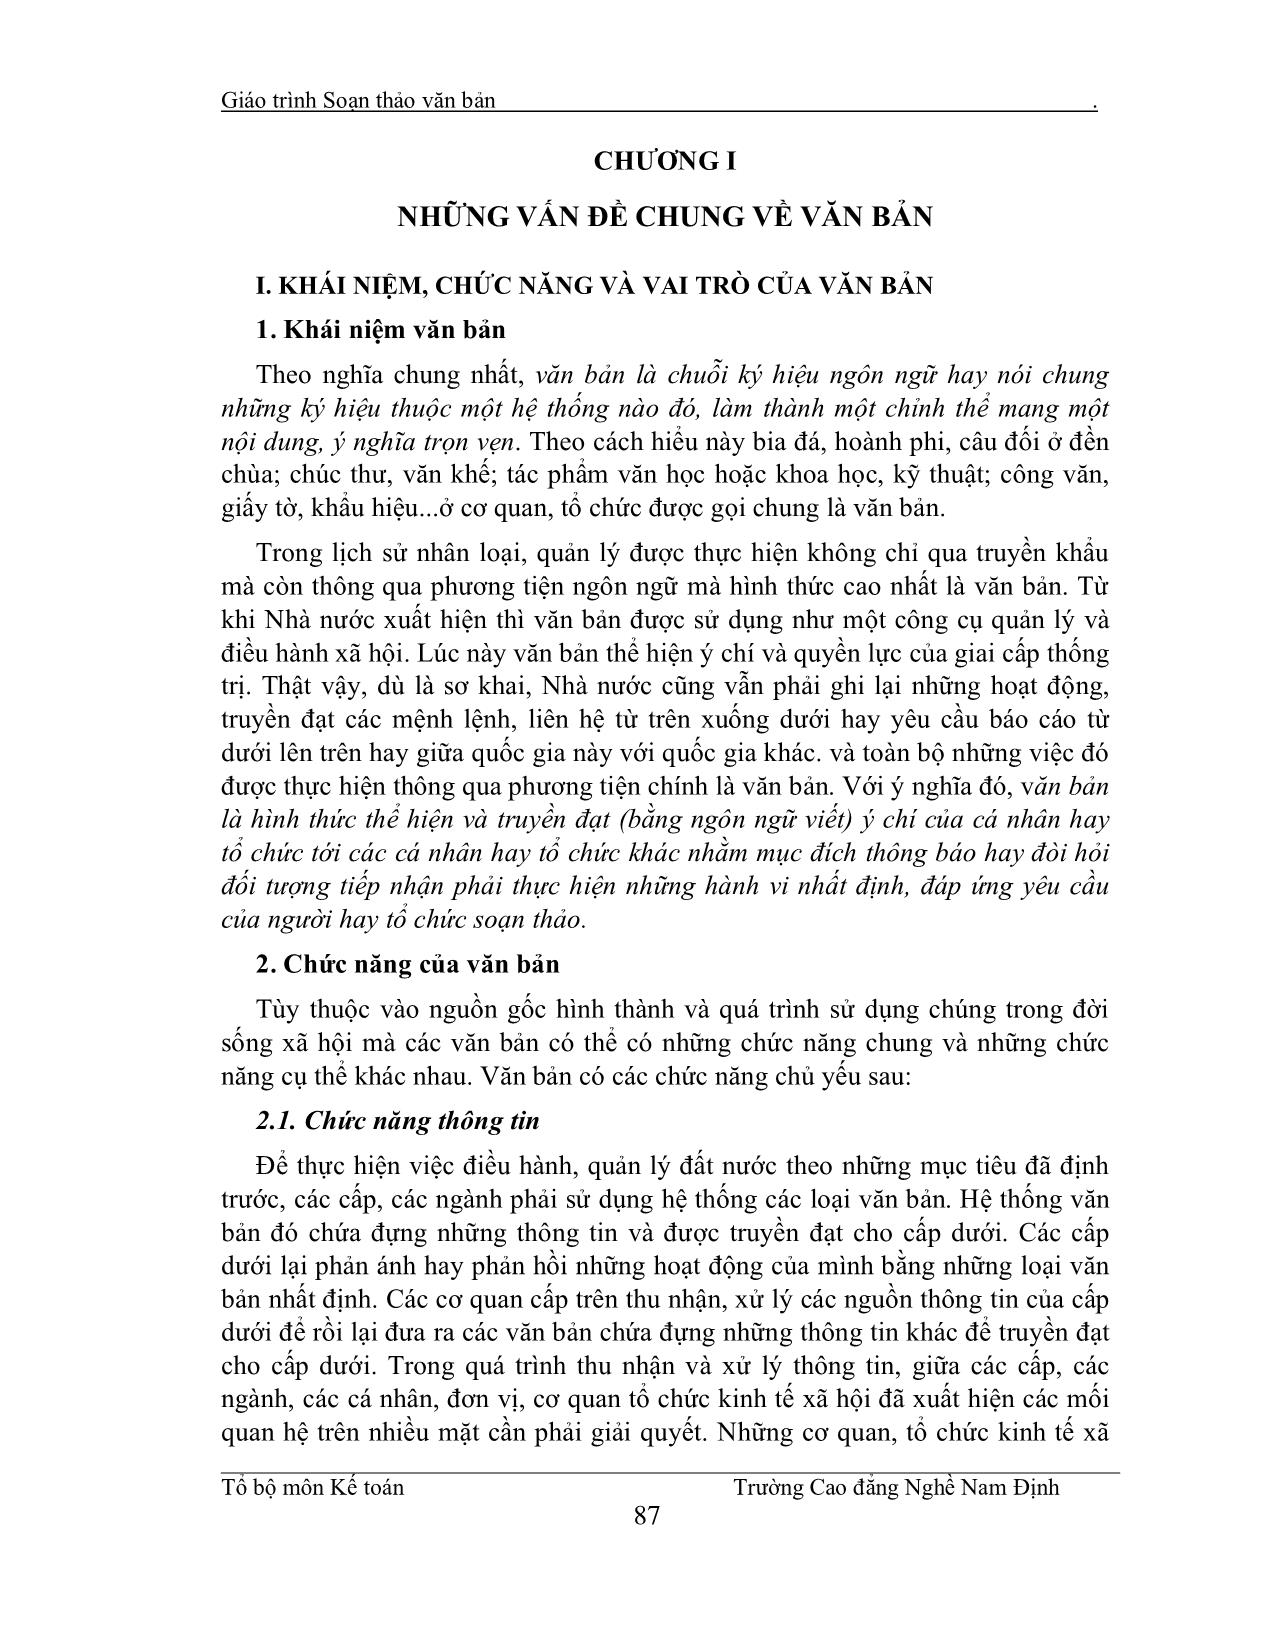 Giáo trình Soạn thảo văn bản (Phần 1) trang 1